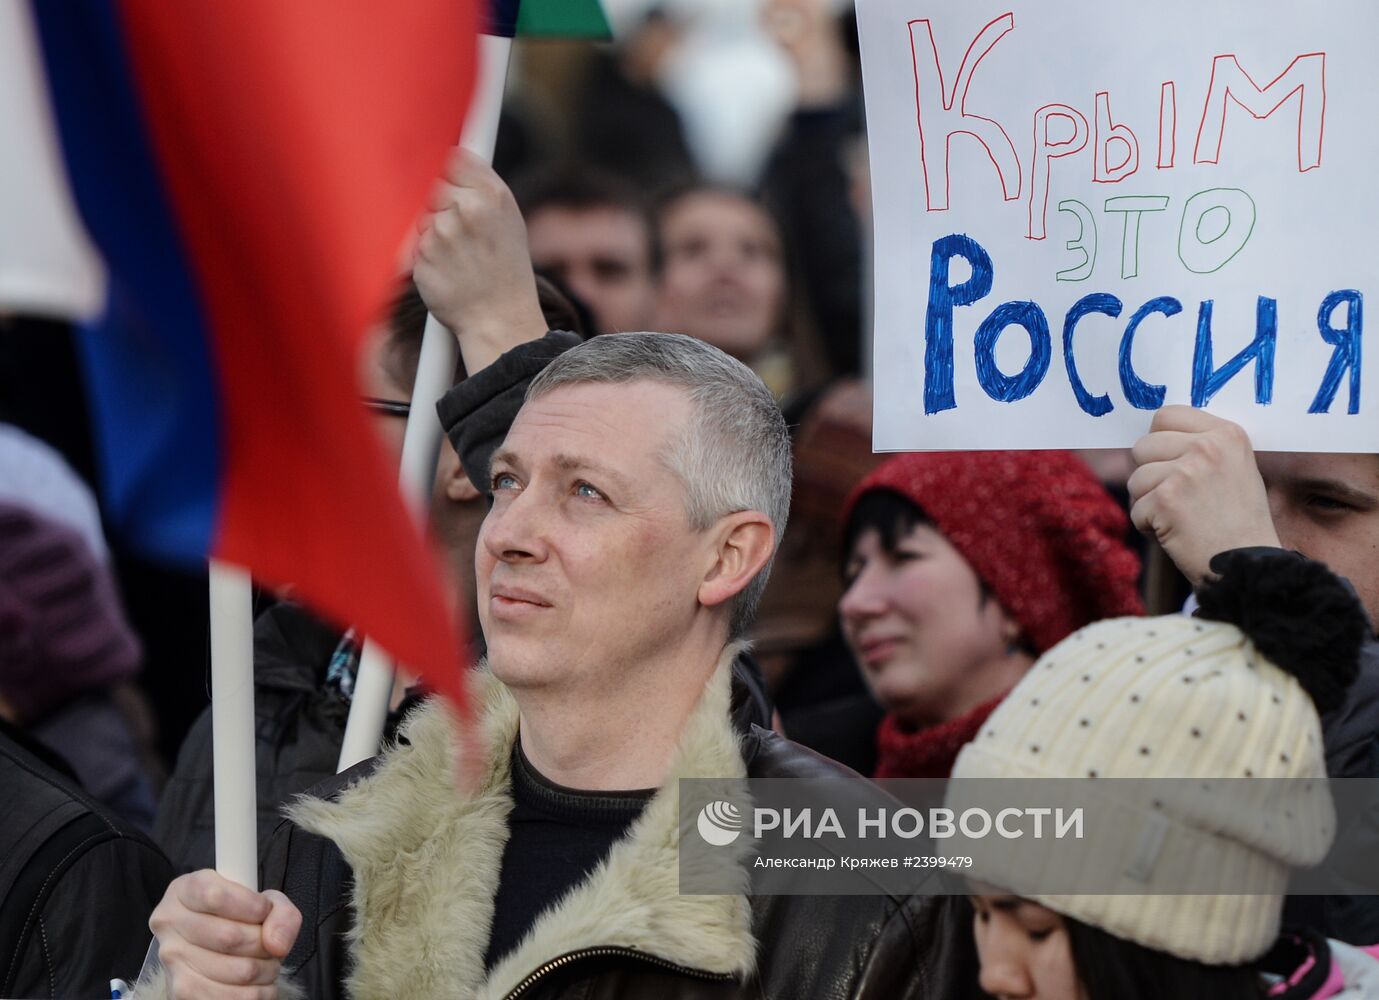 Митинги в регионах России в поддержку Крыма